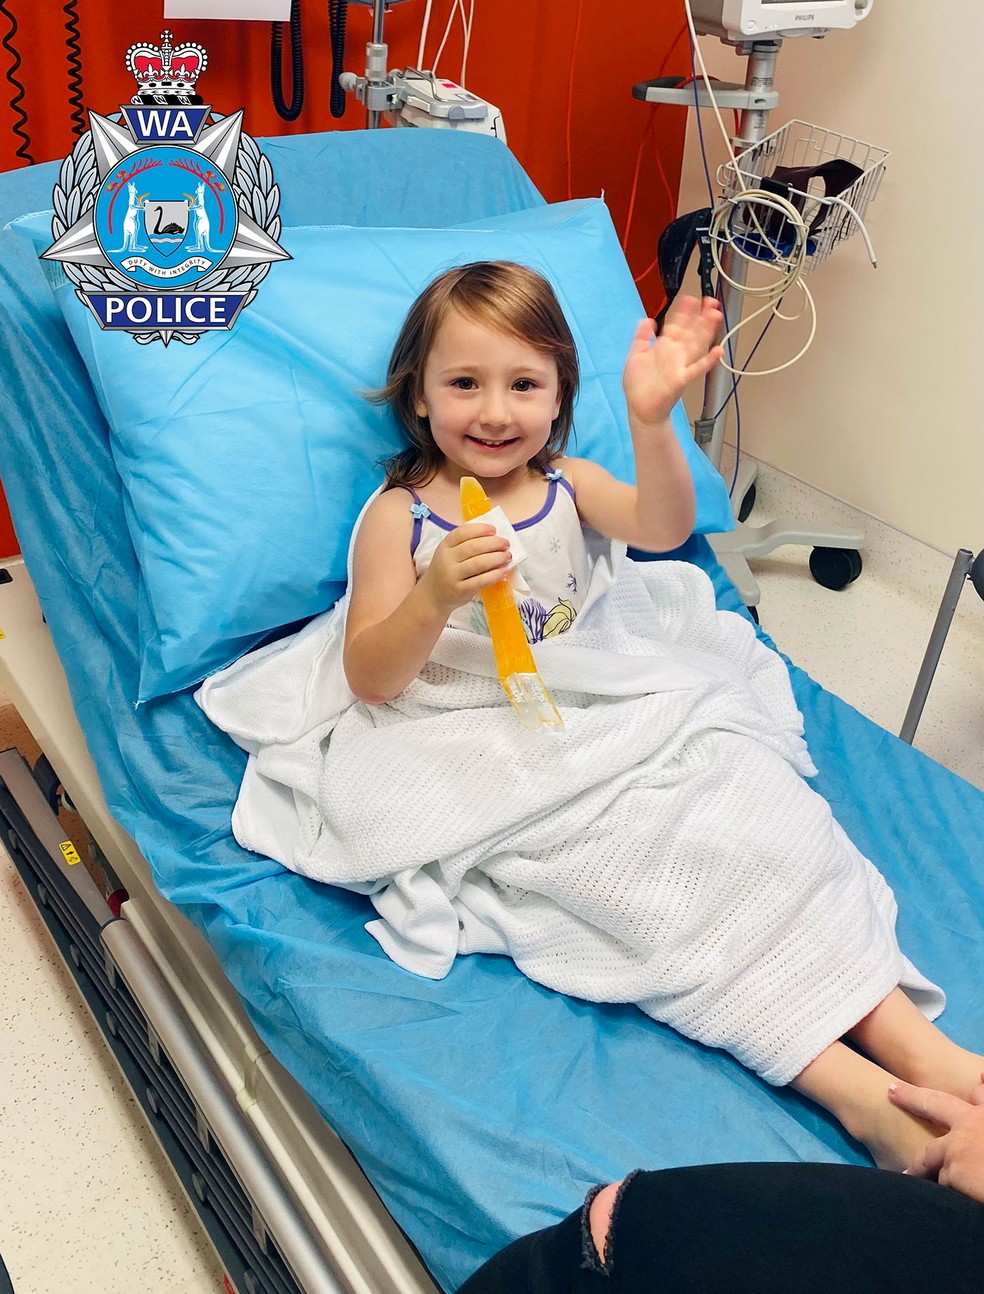 Polícia divulga foto no hospital da pequena Cleo Smith, menina de 4 anos que estava desaparecida havia 18 dias na Austrália e foi encontrada sozinha em uma casa trancada — Foto: Polícia da Austrália Ocidental via Reuters